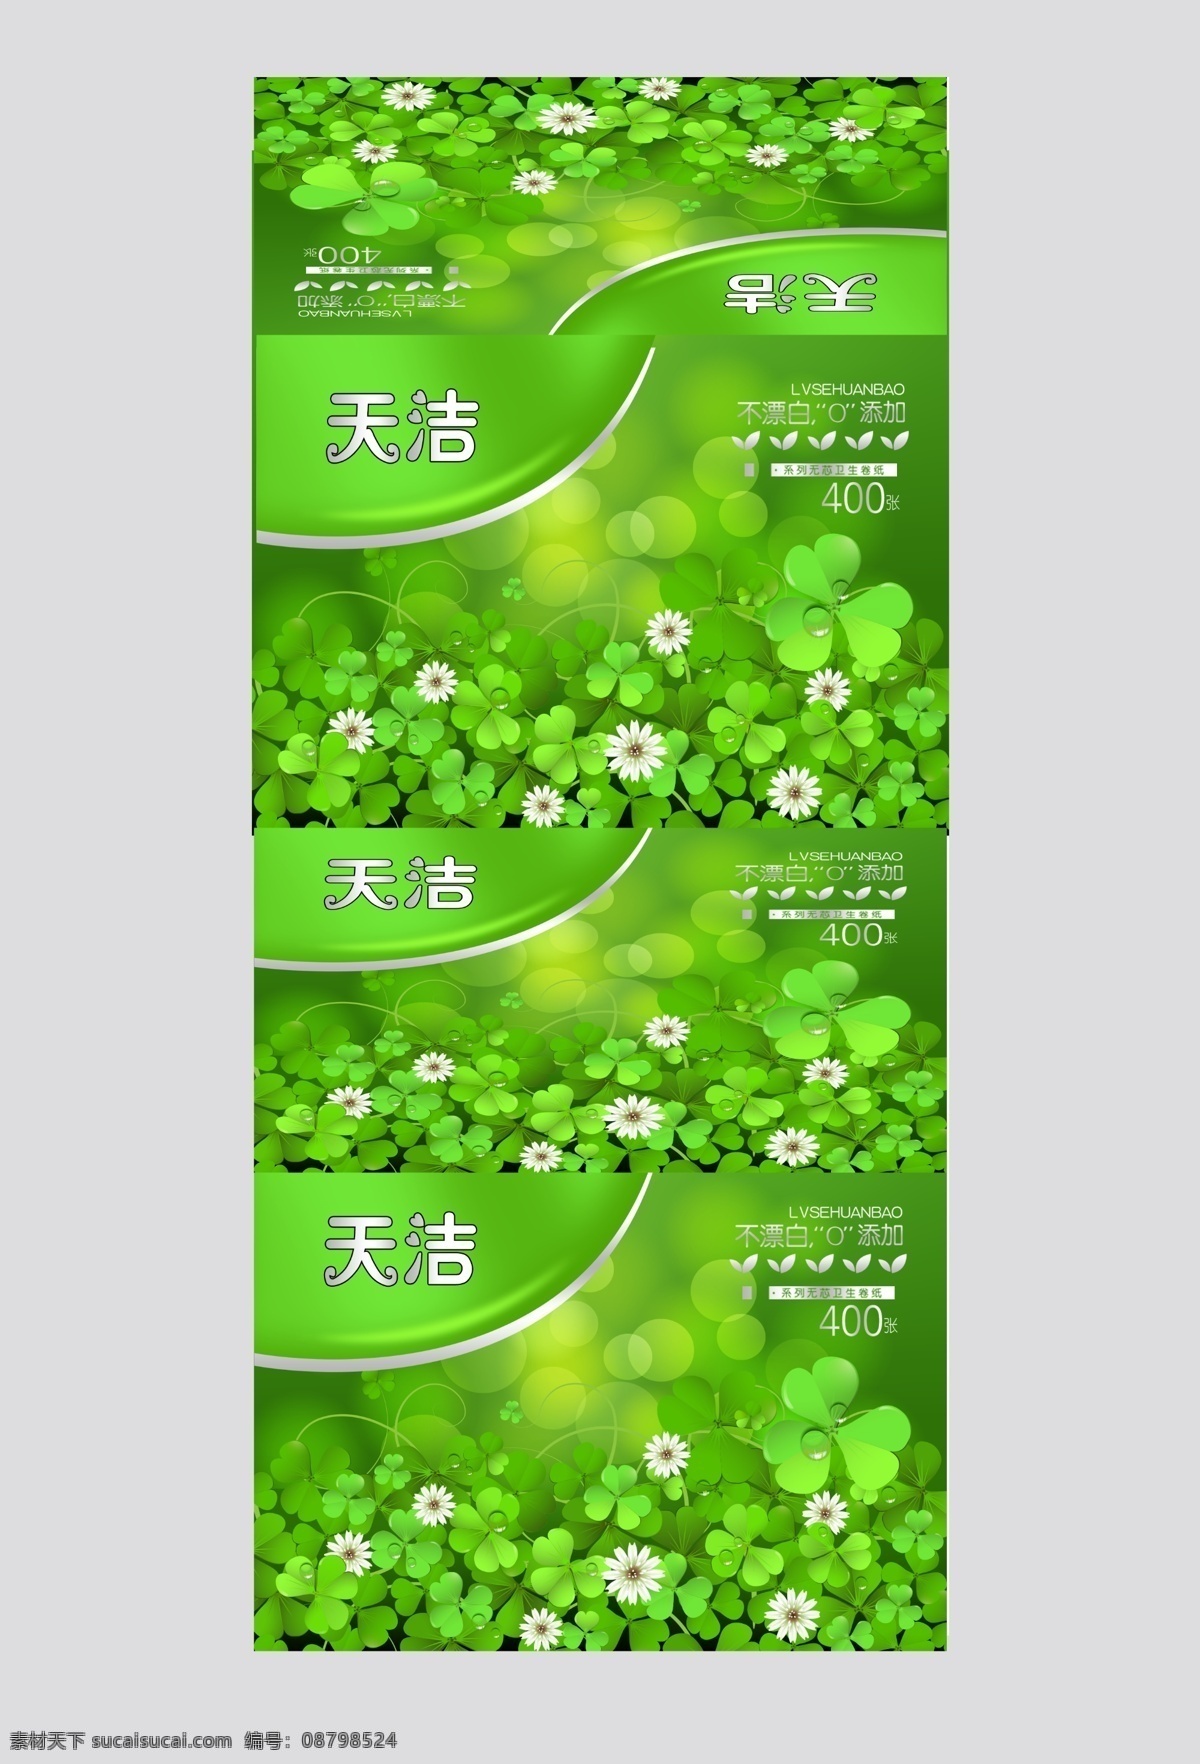 绿色包装设计 抽纸 包装 卫生纸包装 绿色包装 卫生纸 软抽